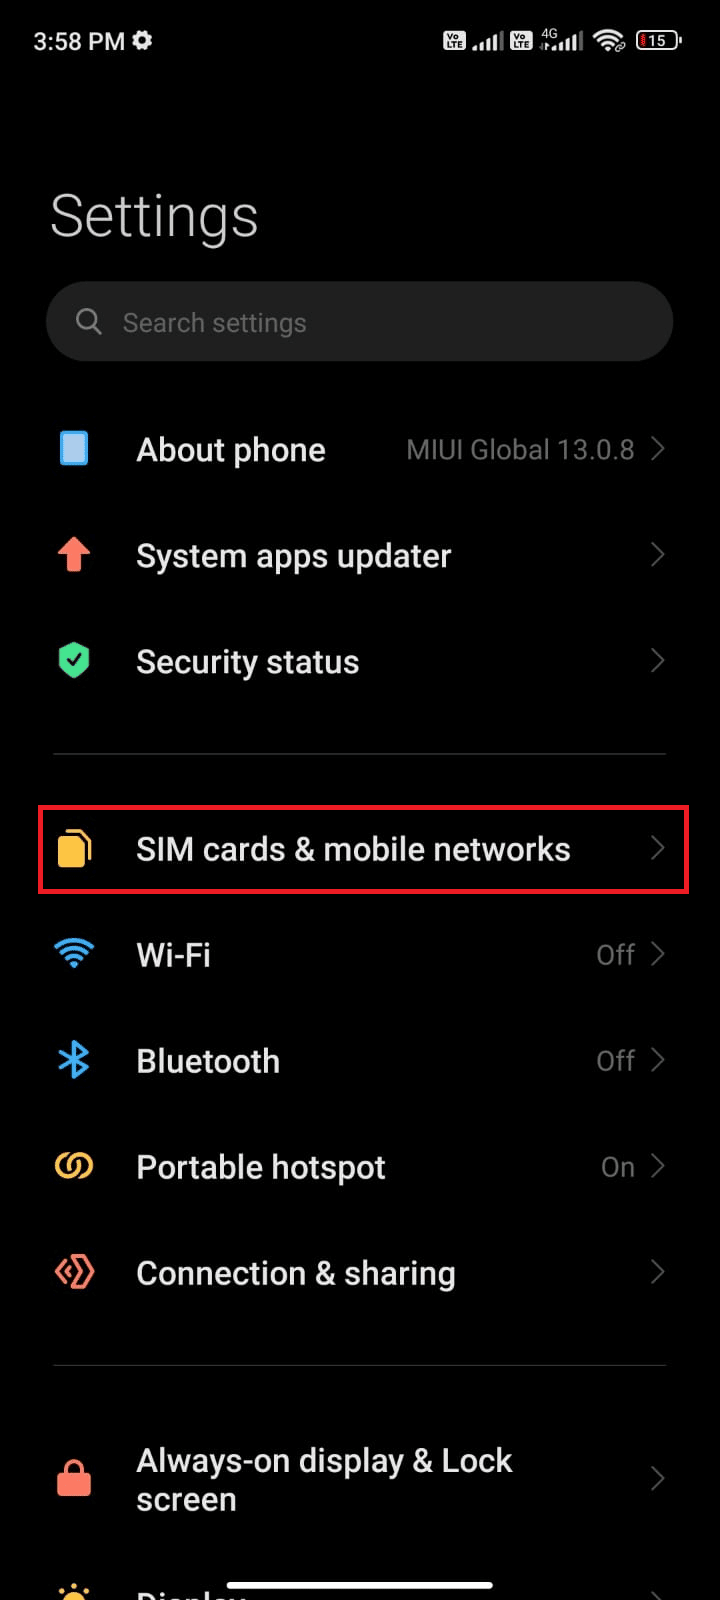 додирните опцију СИМ картице мобилне мреже